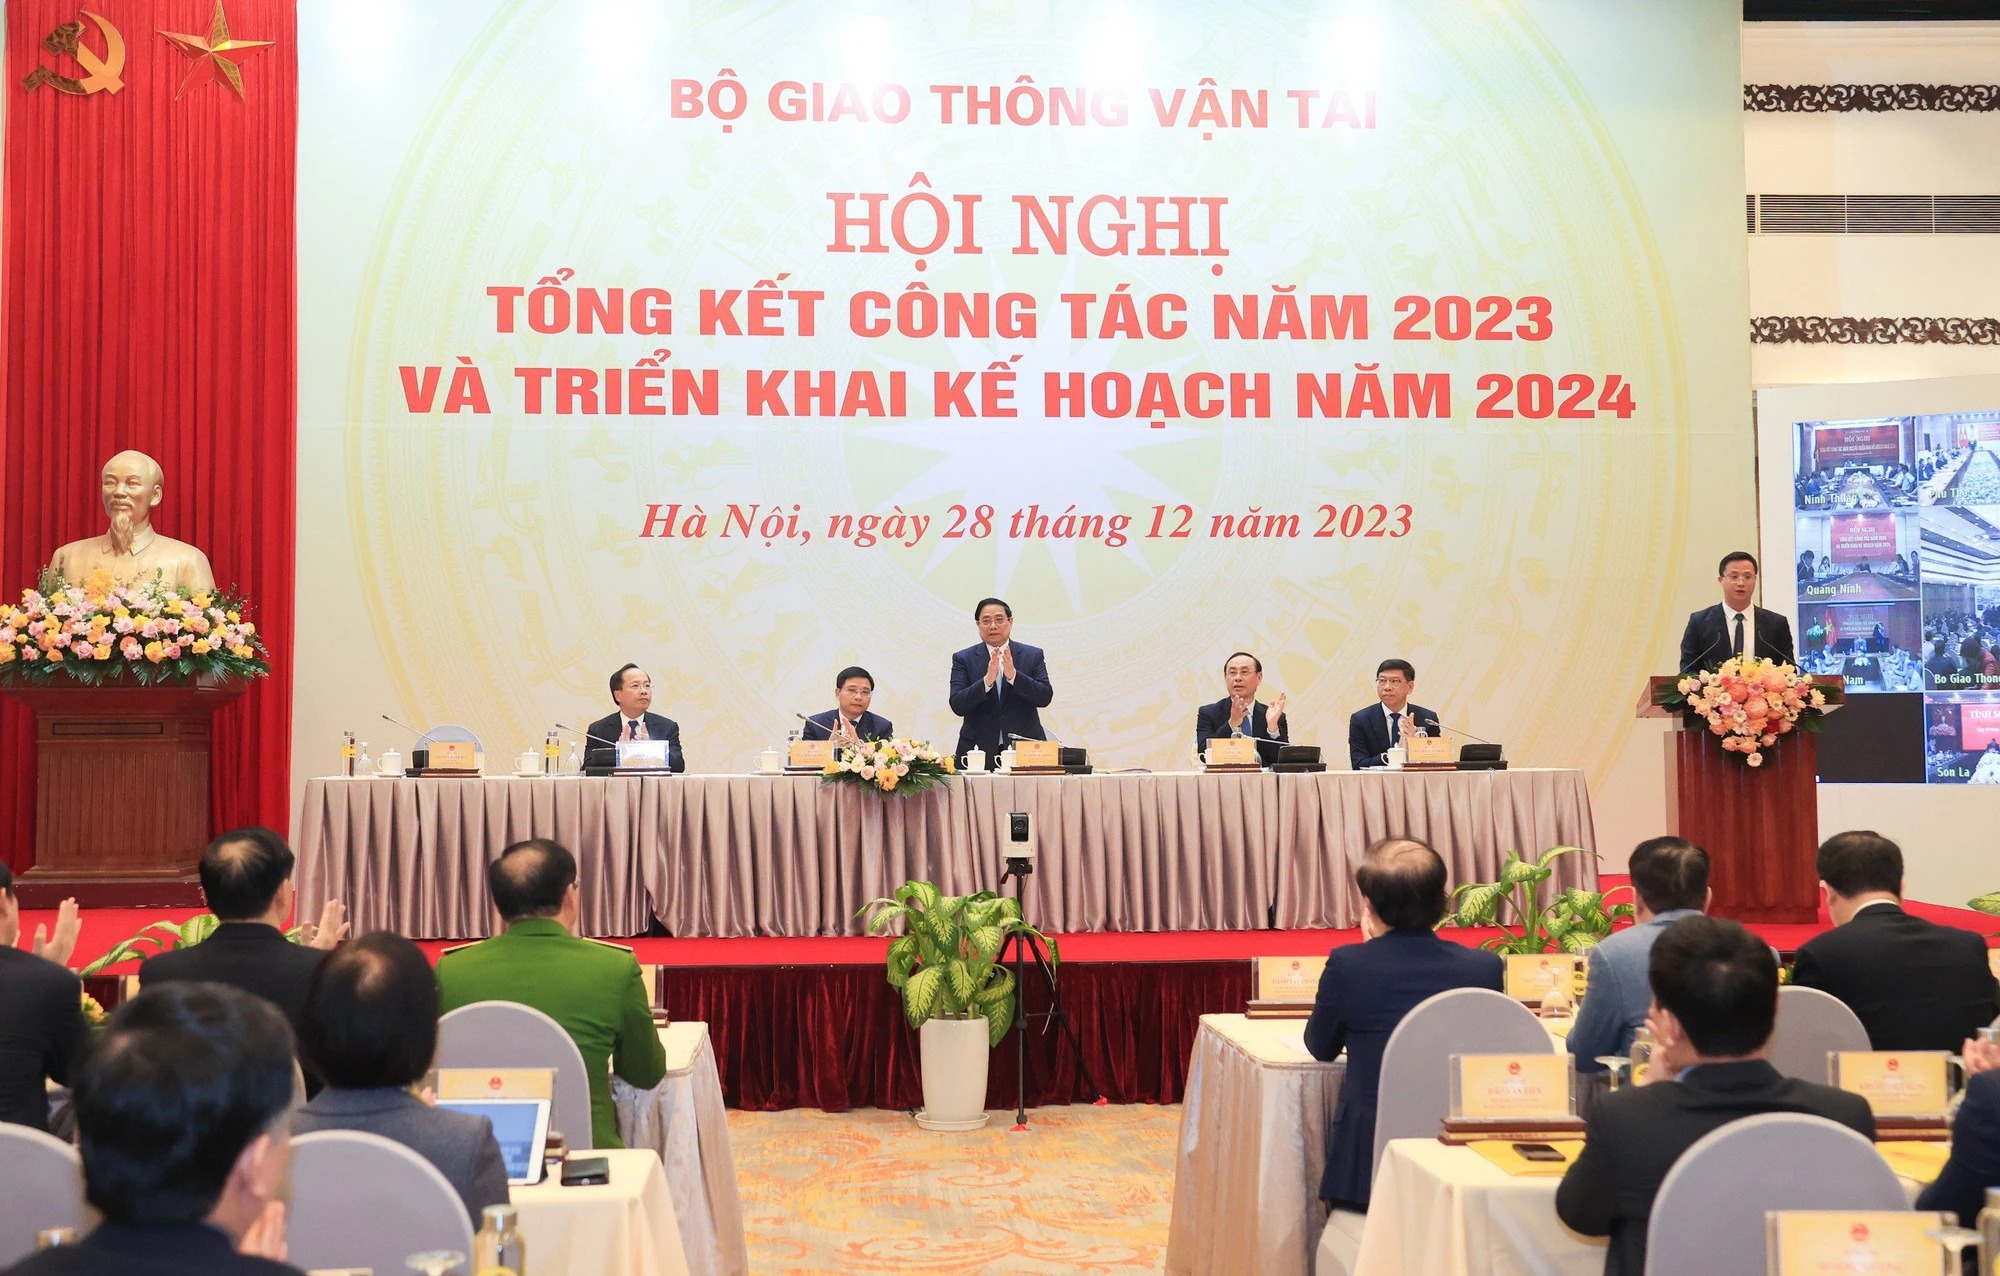 Thủ tướng Chính phủ Phạm Minh Chính tham dự và chỉ đạo hội nghị